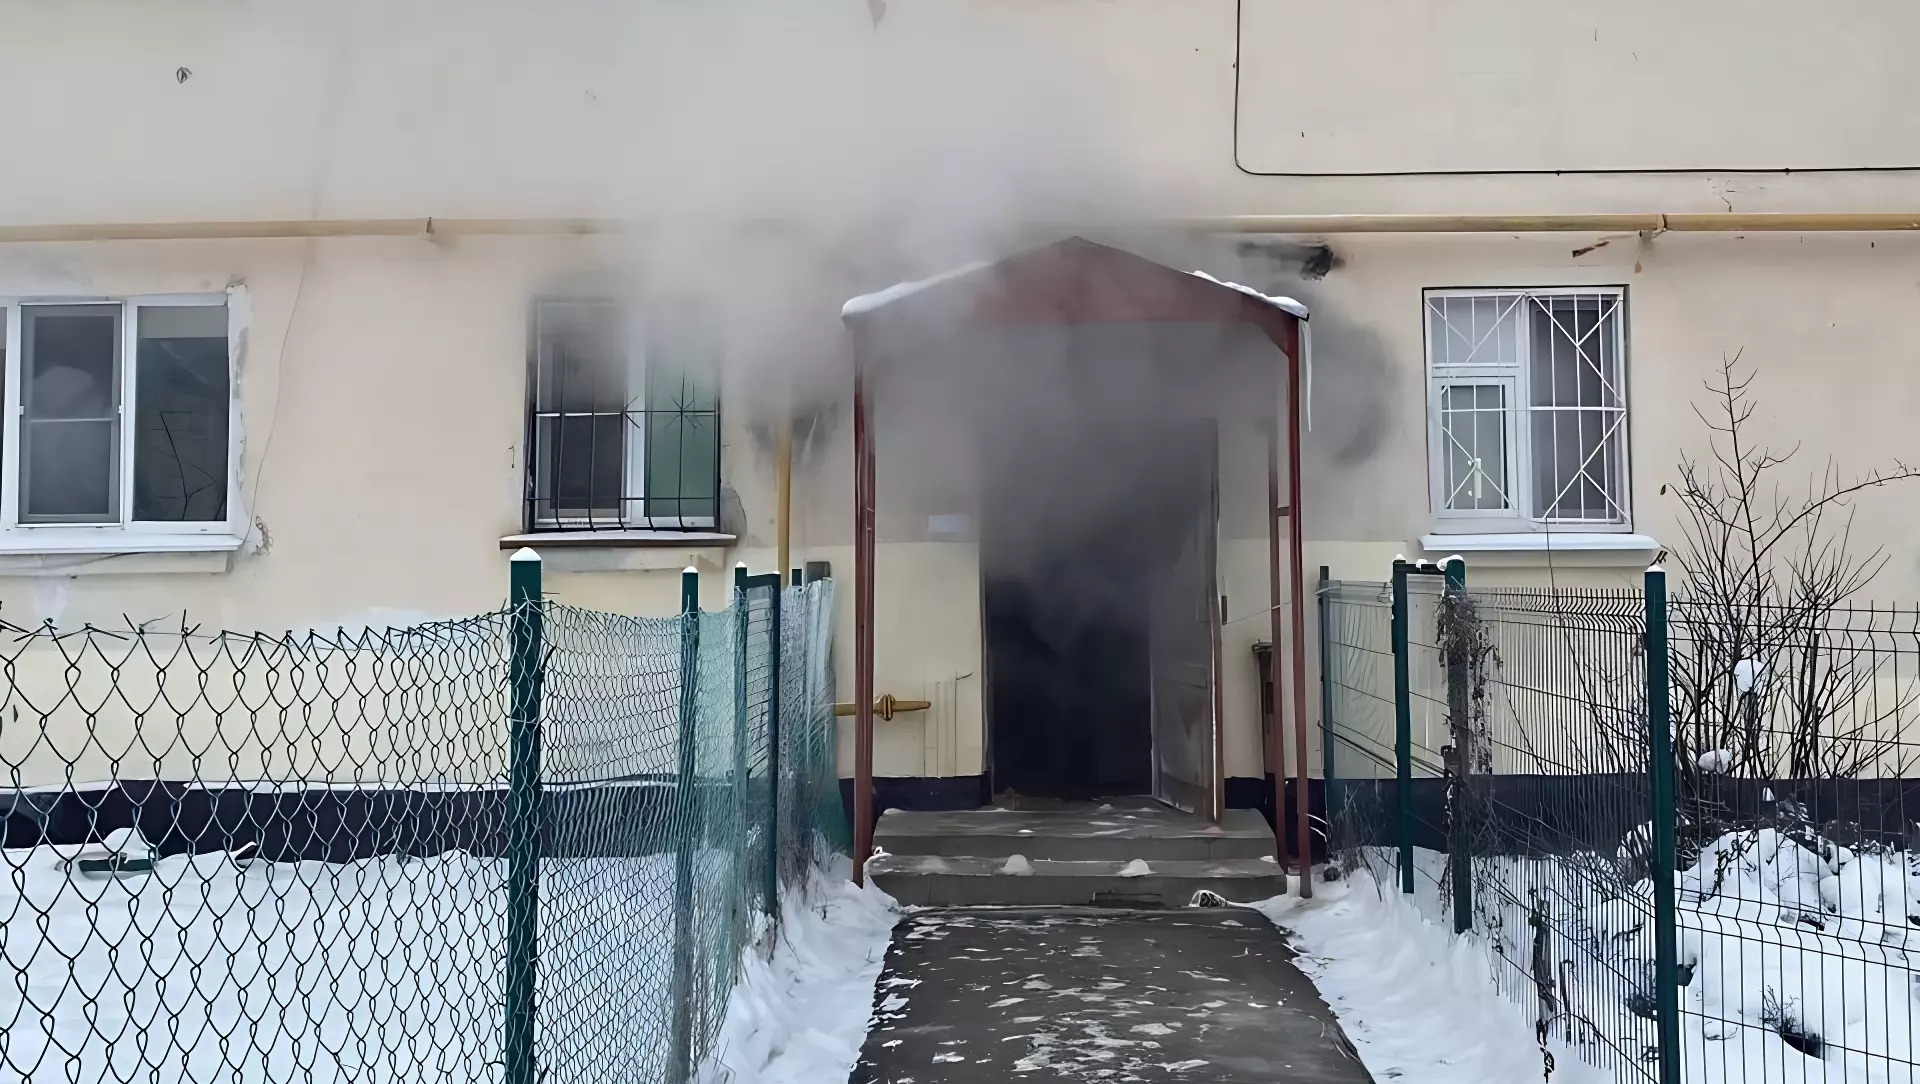 Дом в Нижнем Новгороде превратился в сауну из-за аварии в подвале